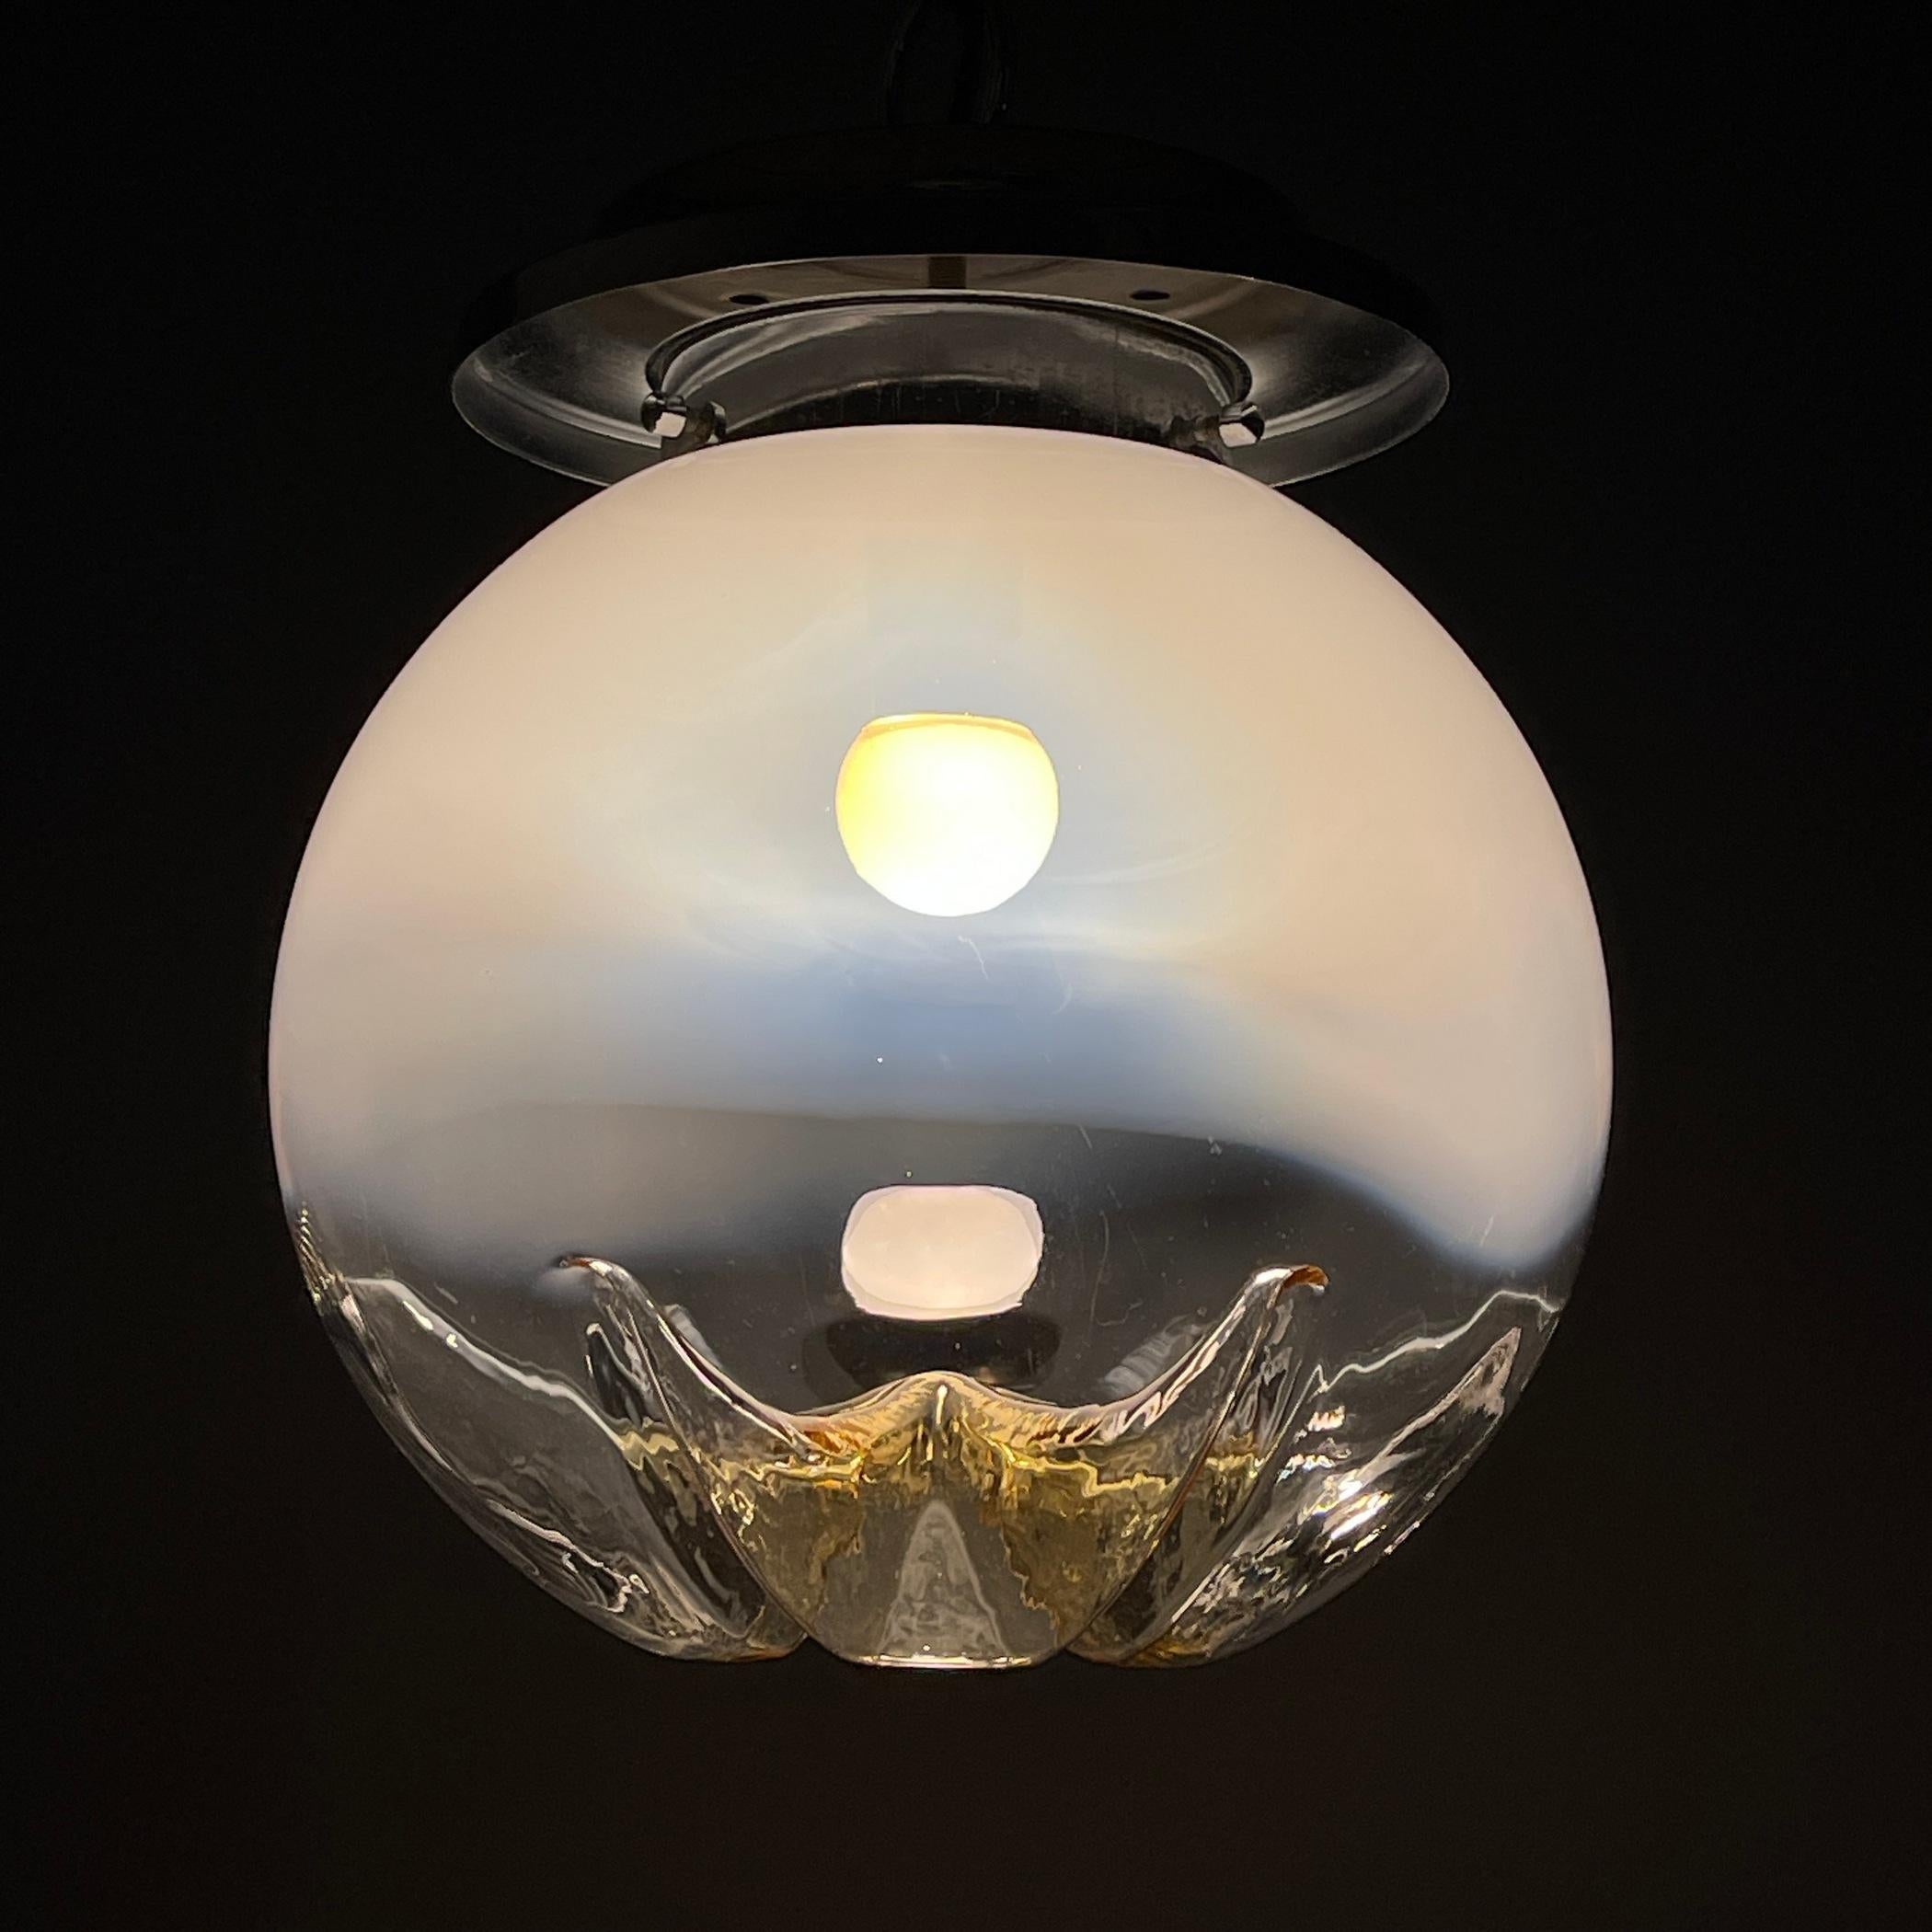 Laissez-vous séduire par l'allure de cette superbe lampe suspendue en verre de Murano, fabriquée par Mazzega au cours des remarquables années 1960 en Italie. Ornez votre maison d'une pièce captivante qui émane l'essence du charme italien vintage. Le